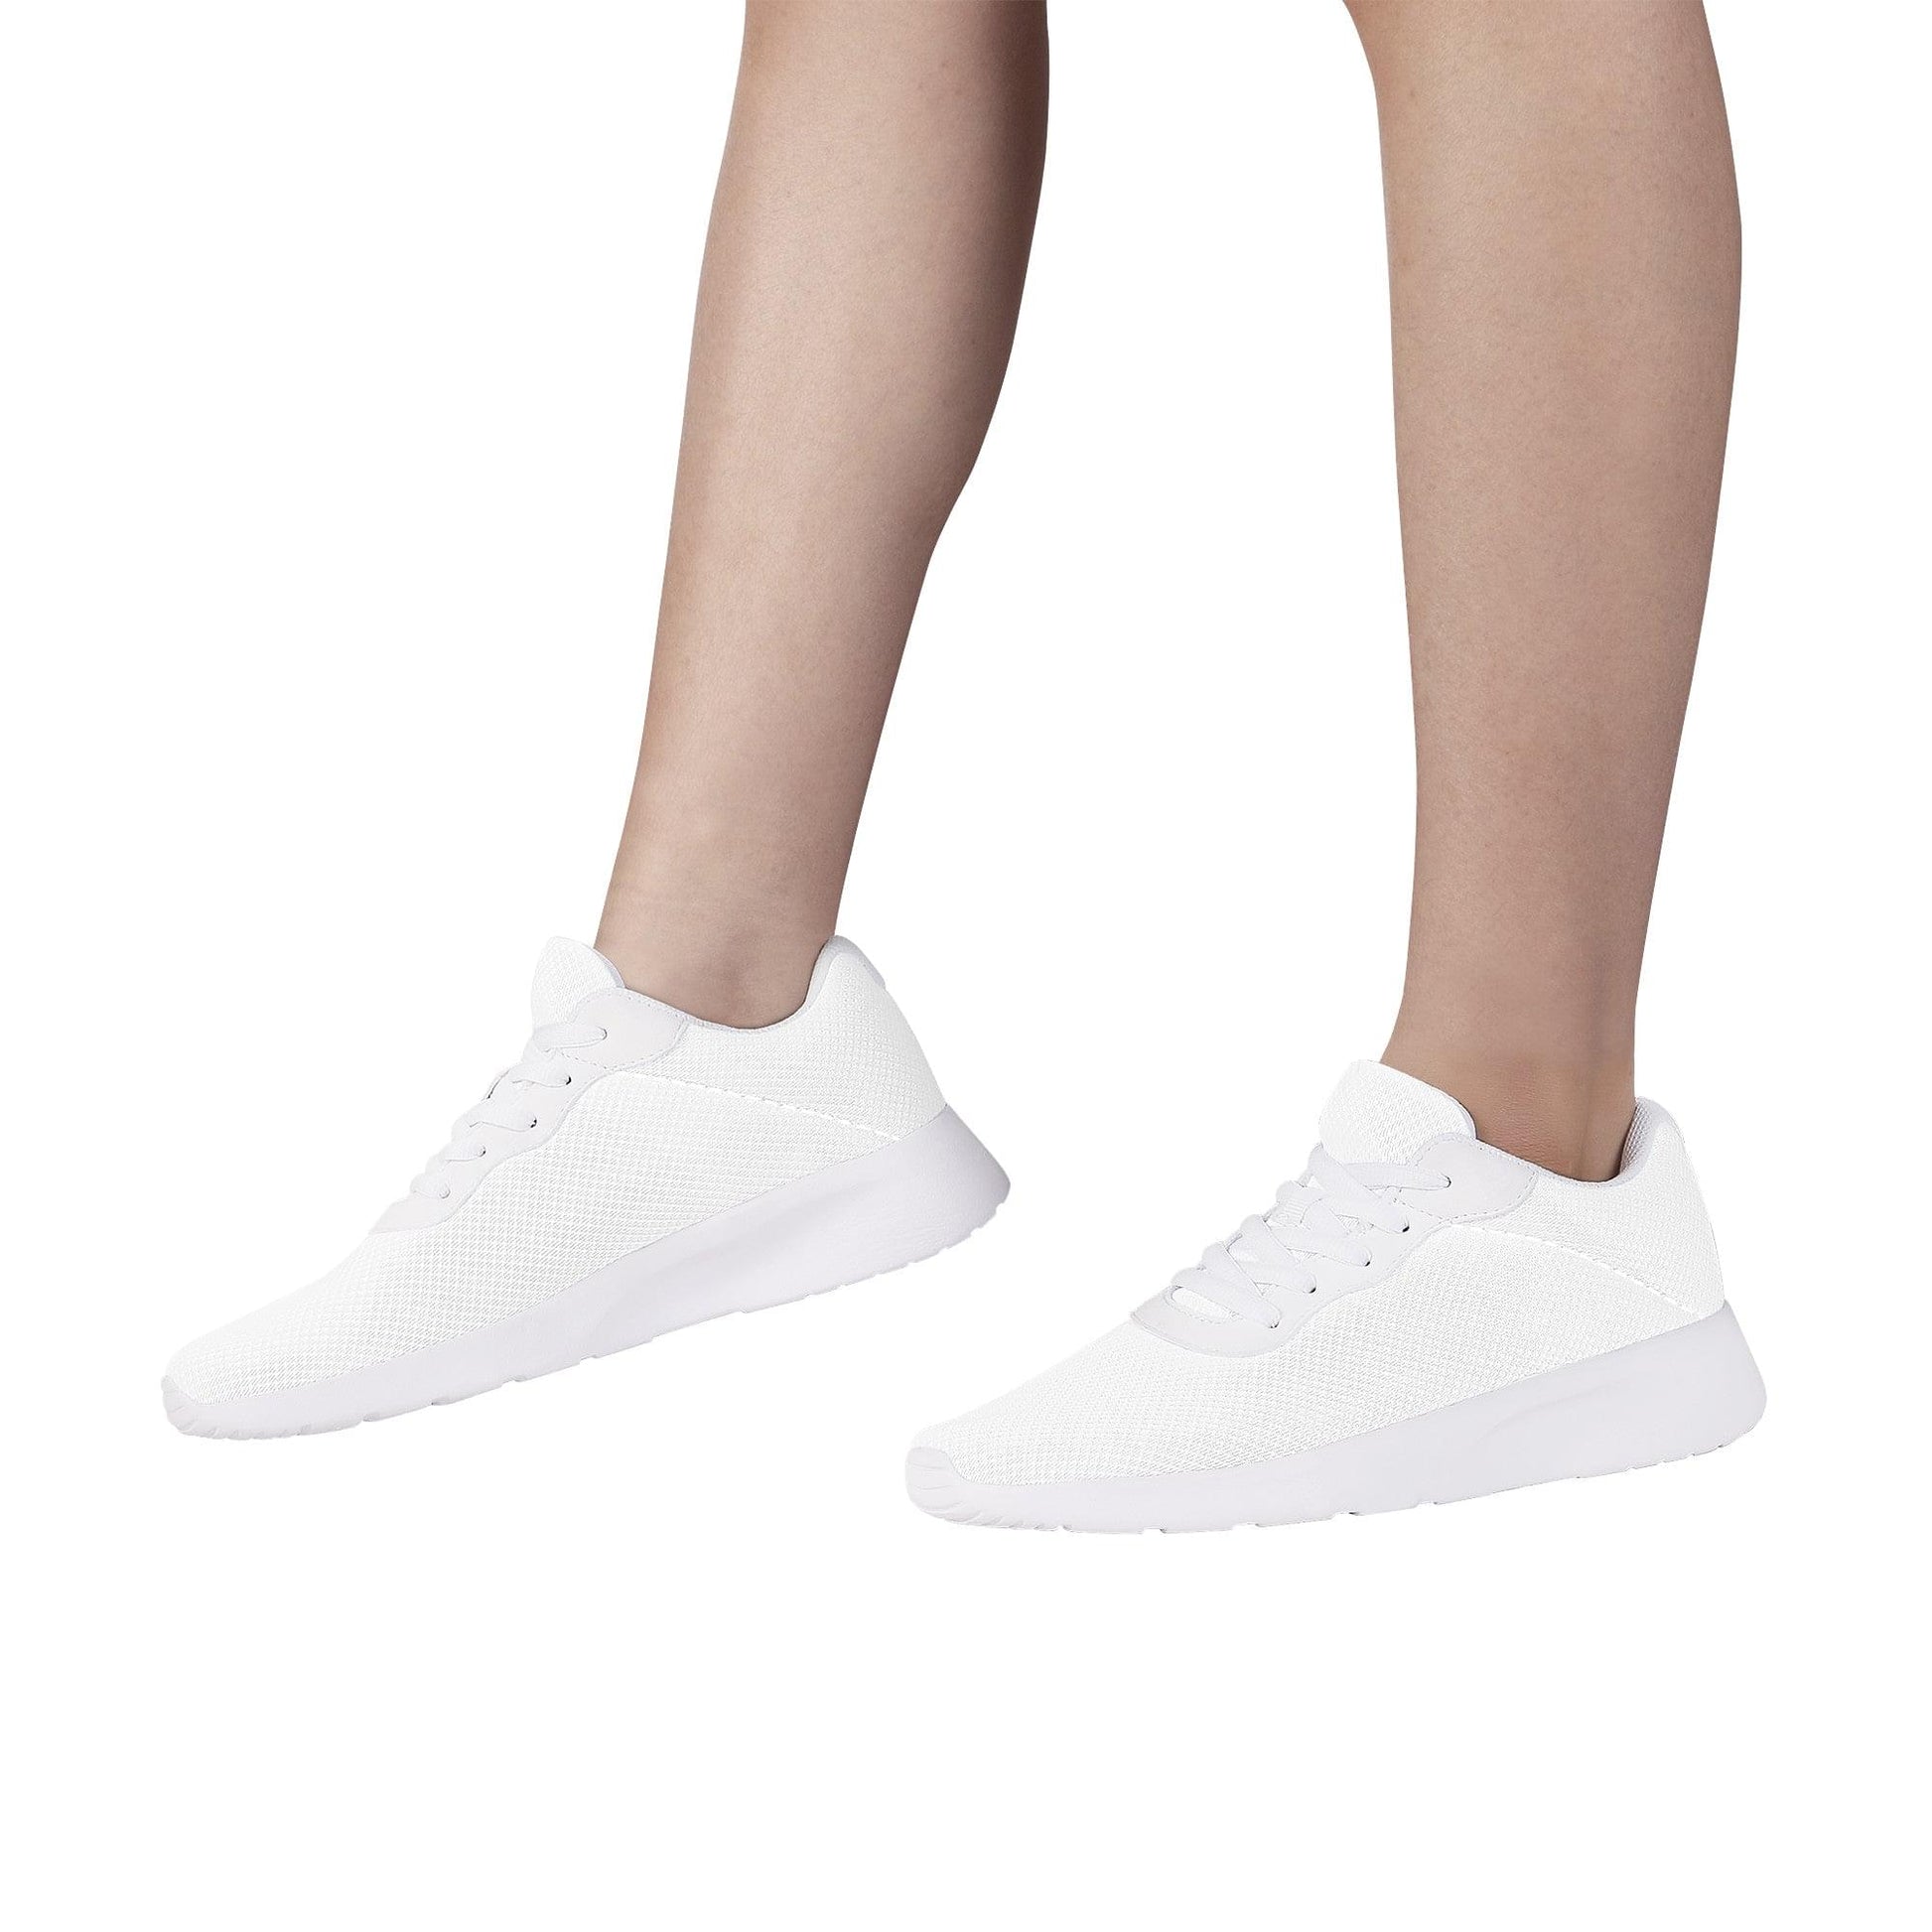 Custom Air Mesh Running Shoes -White SF F14 Colloid Colors 